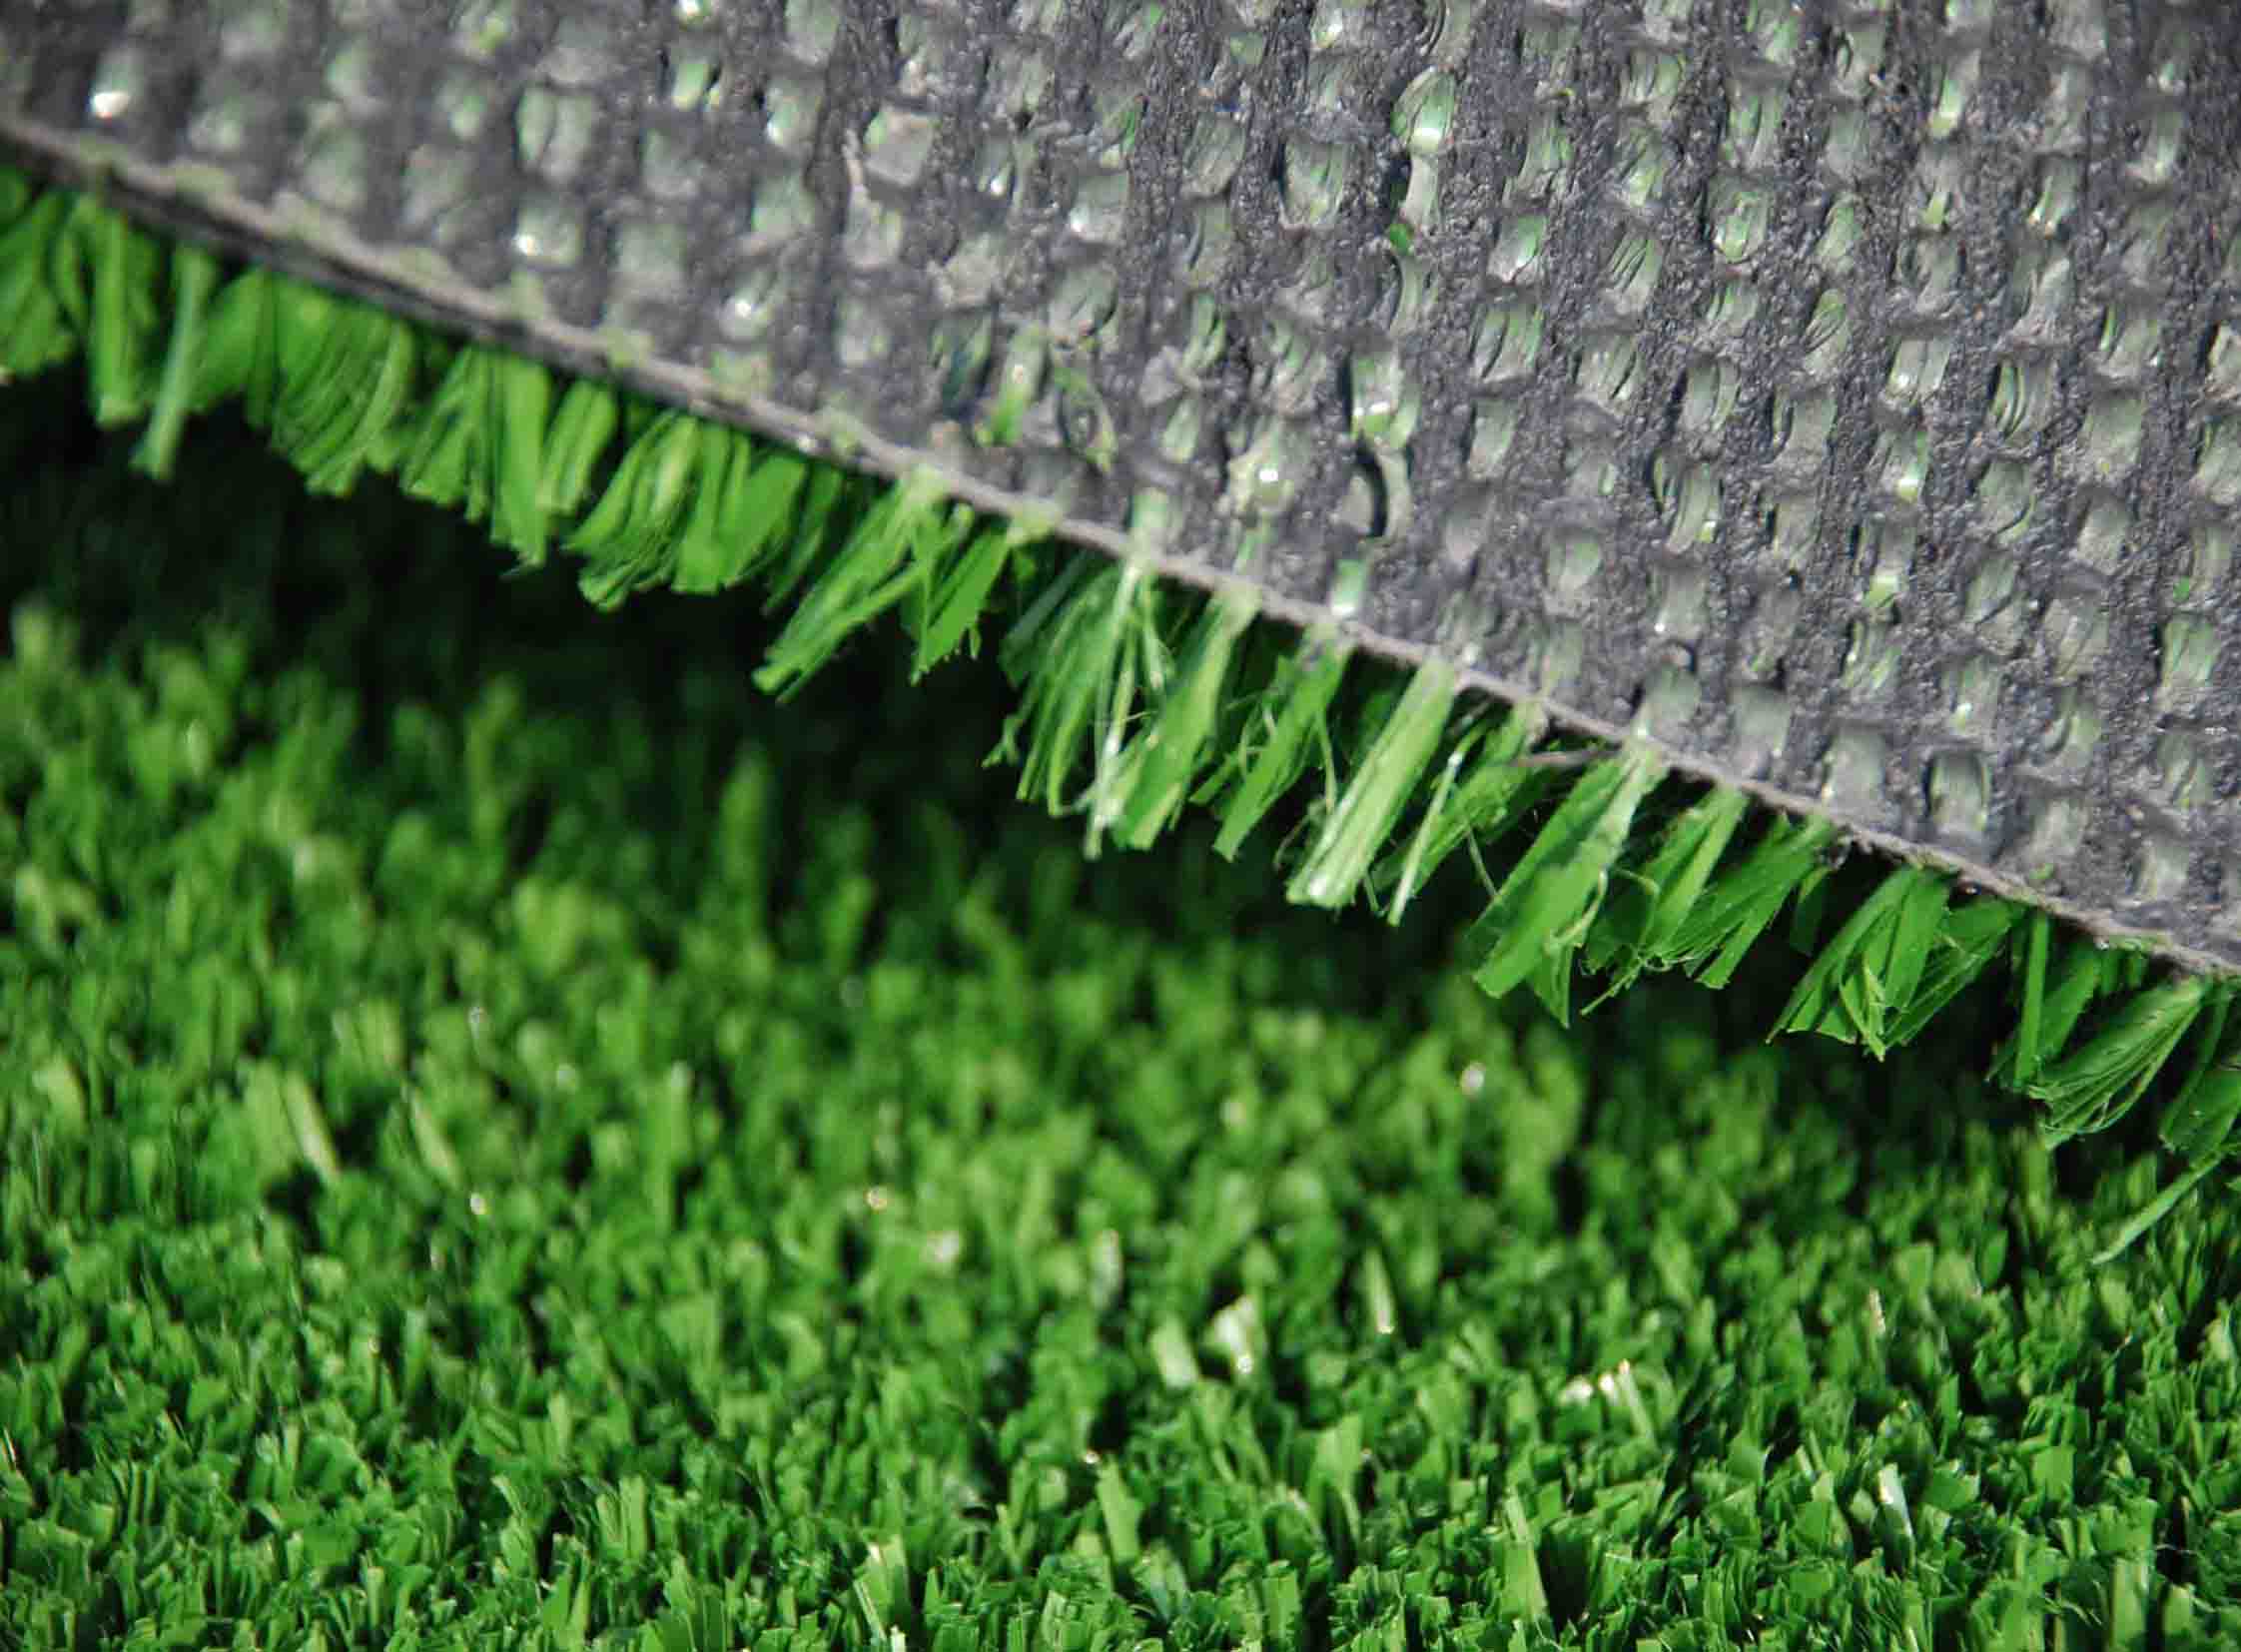 Good Quality Artificial Grass